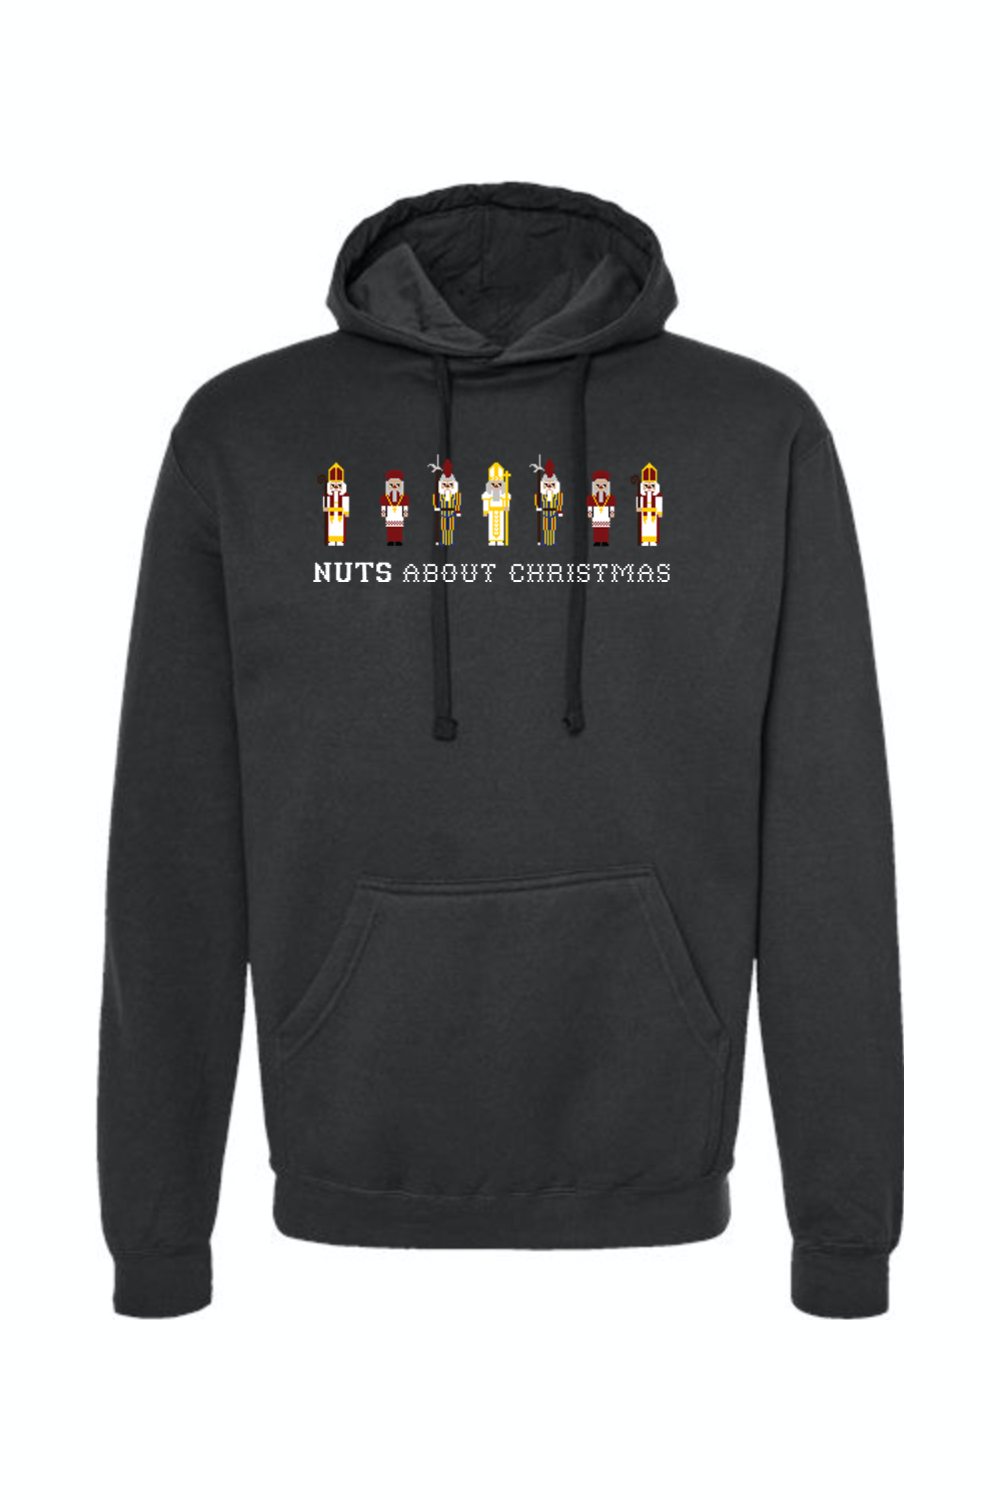 Nuts About Christmas - Hoodie Sweatshirt